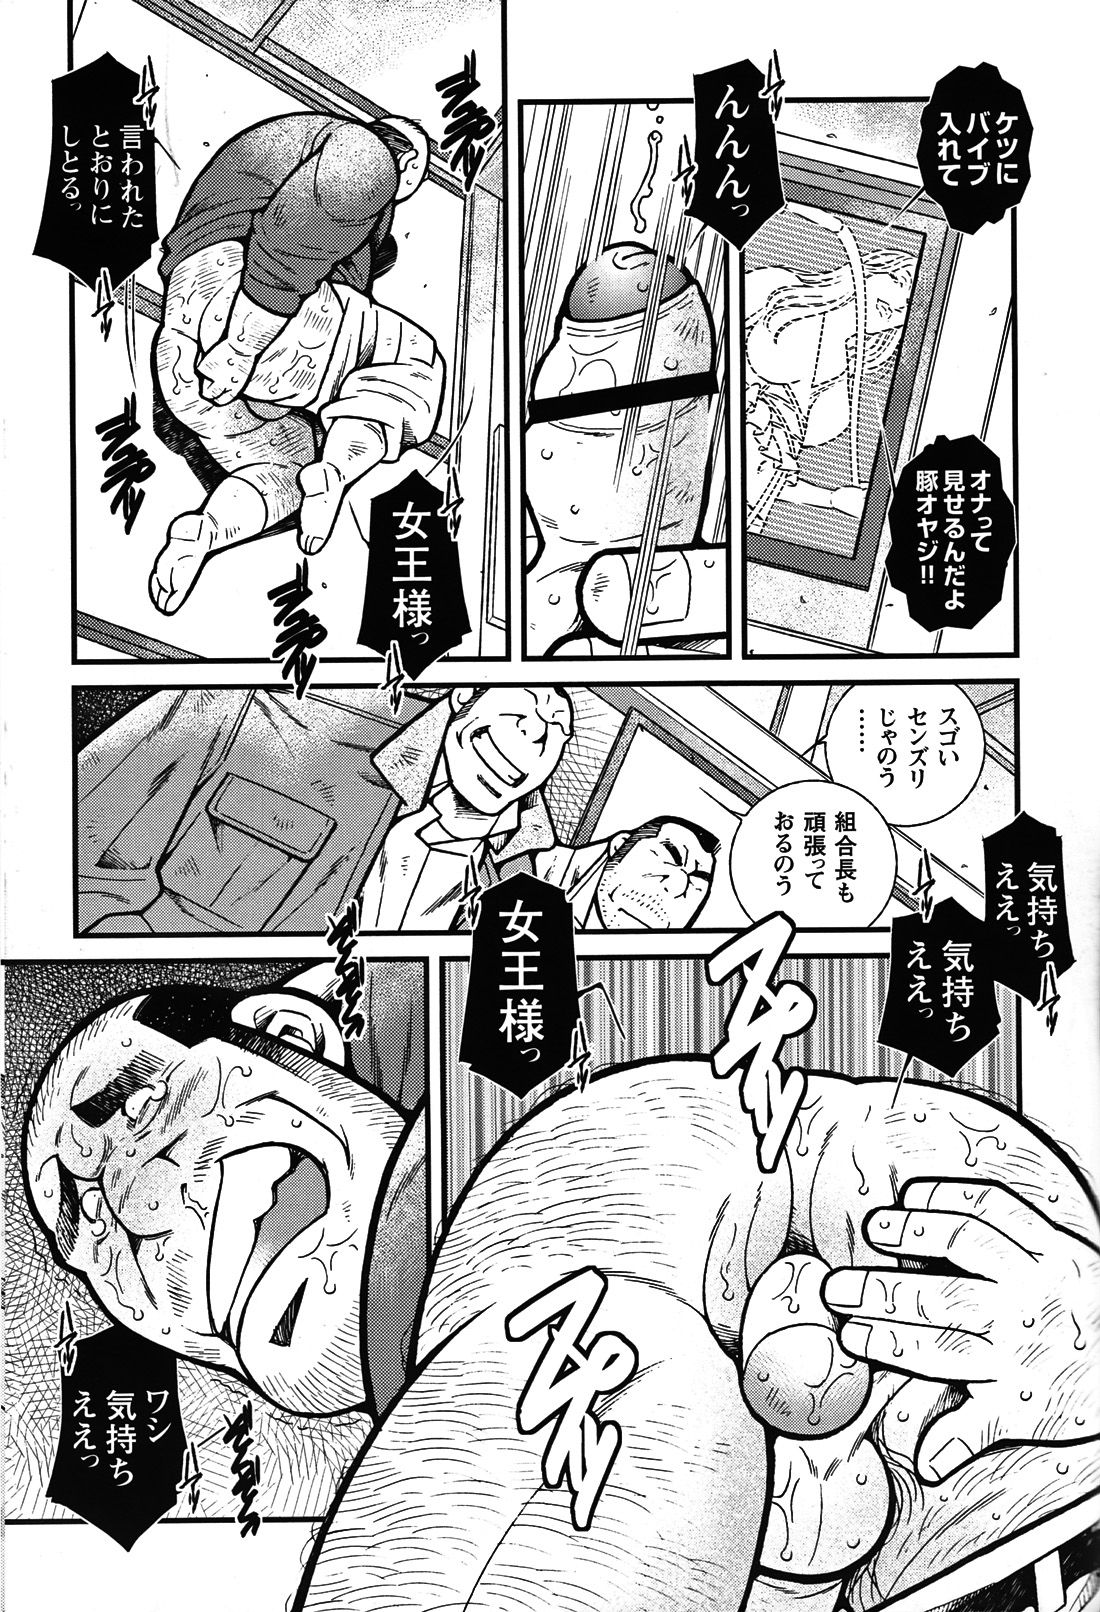 Comic G-men Gaho No. 06 Nikutai Roudousha page 46 full